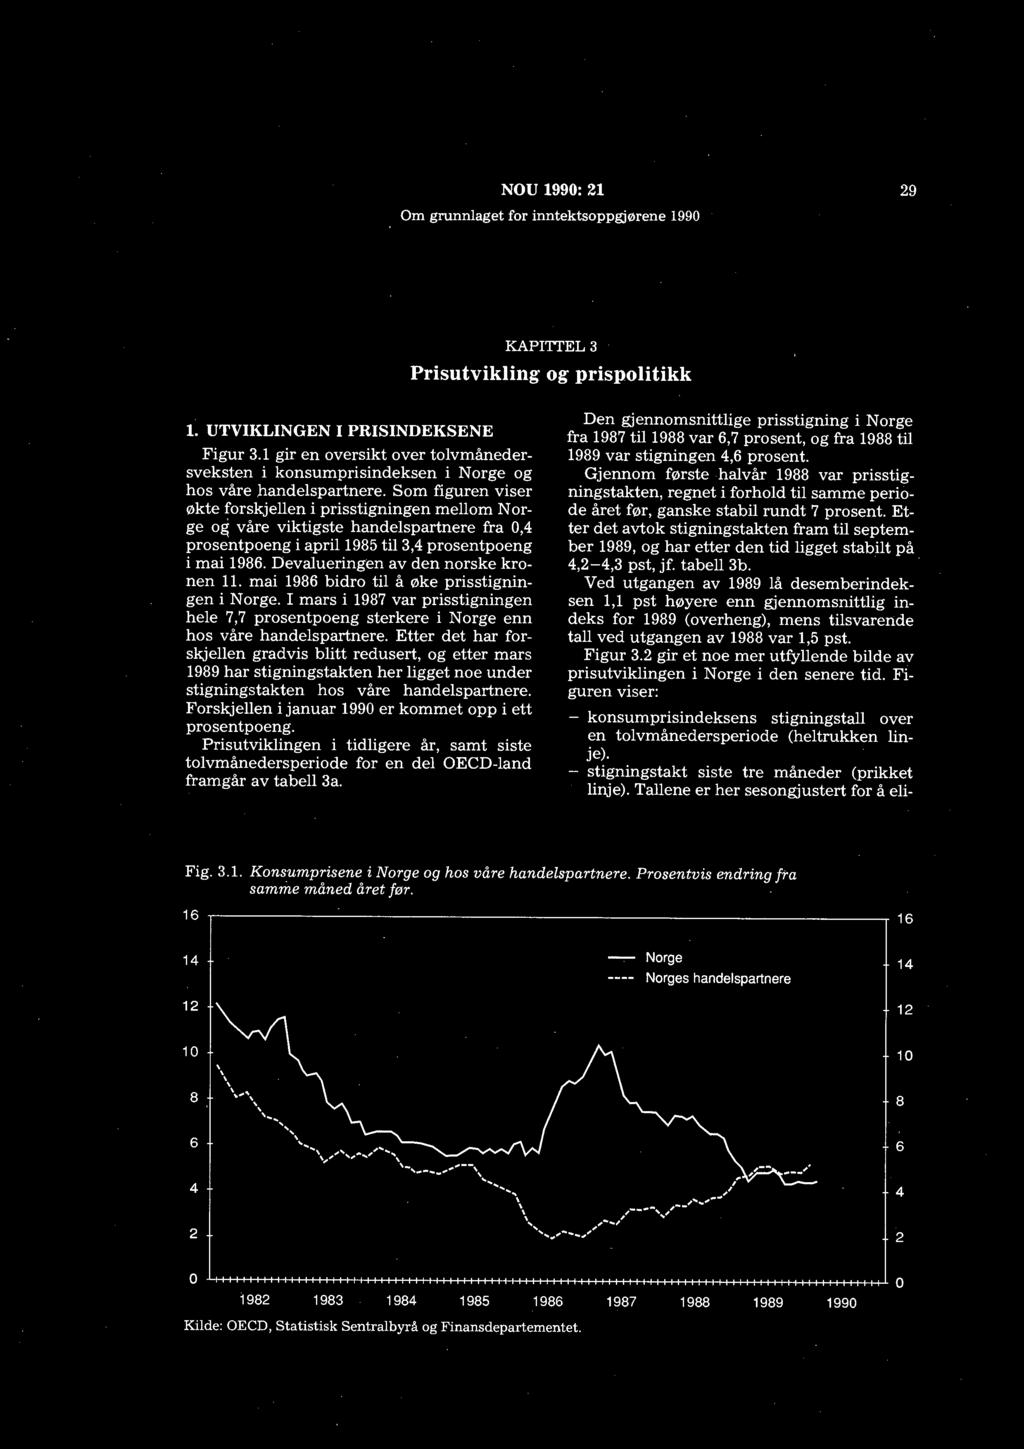 Devalueringen av den norske kronen 11. mai 1986 bidro til å øke prisstigningen i Norge. I mars i 1987 var prisstigningen hele 7,7 prosentpoeng sterkere i Norge enn hos våre handelspartnere.